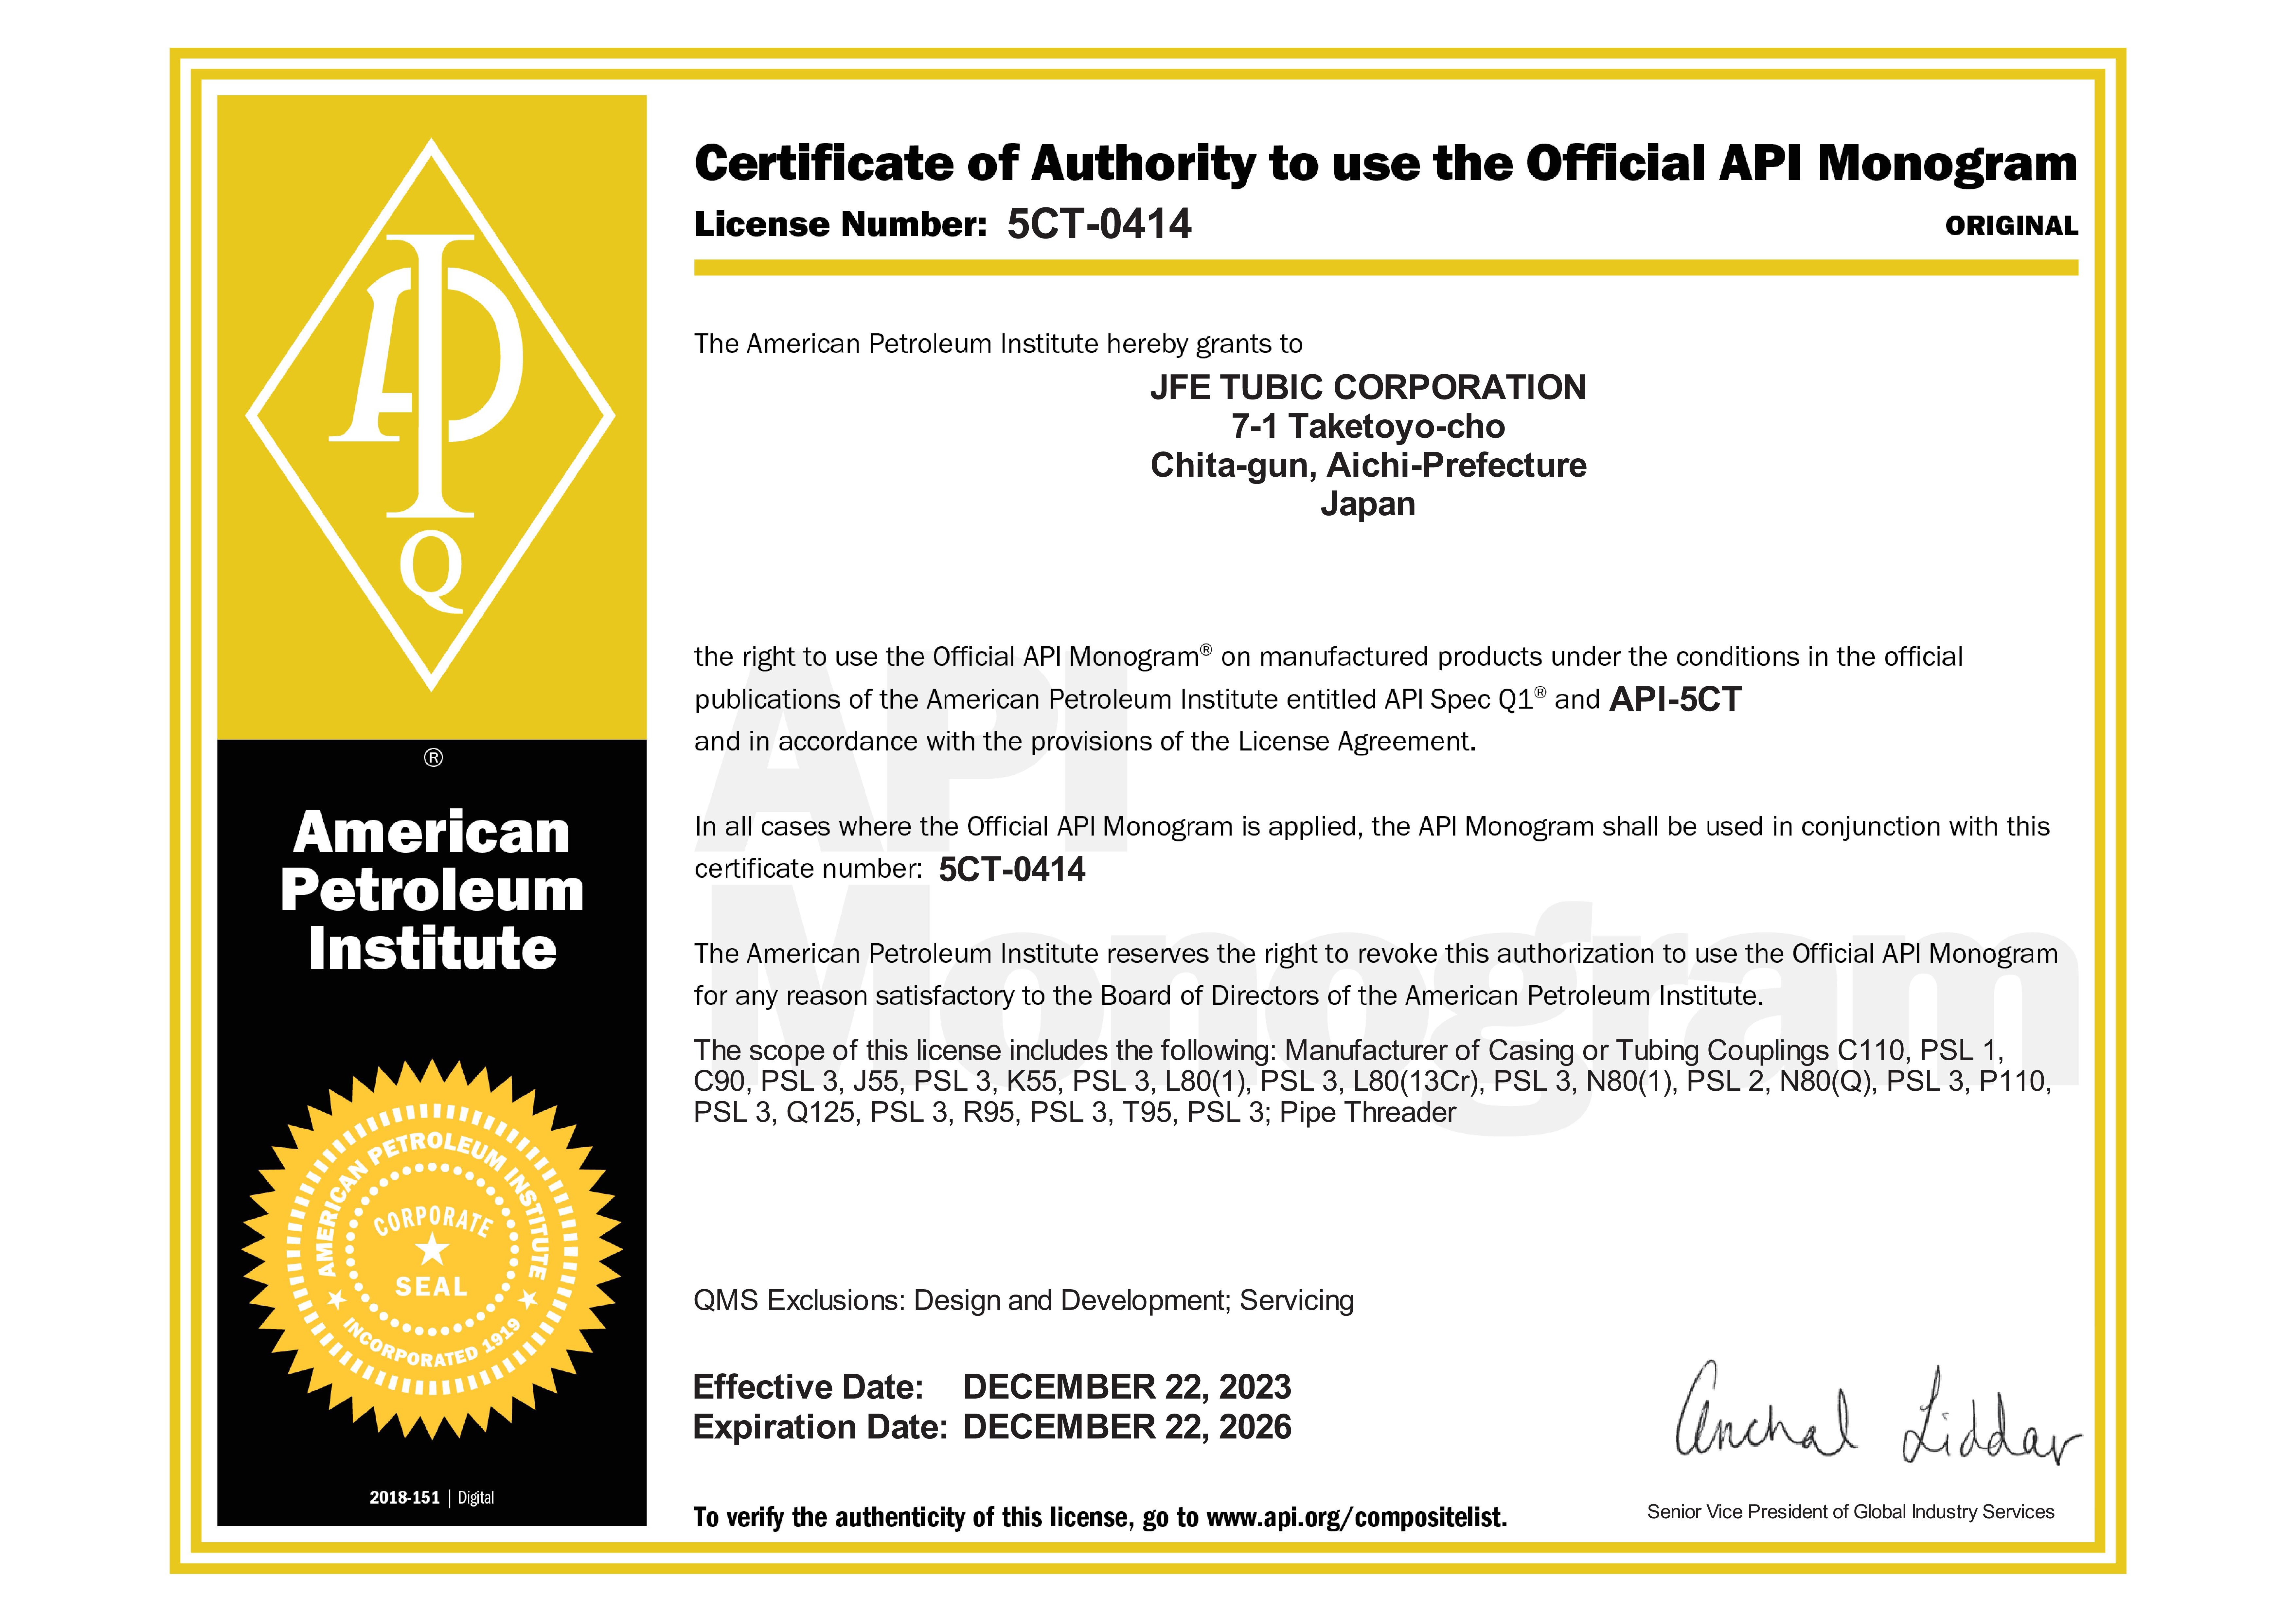 American Petroleum Institute (API) 